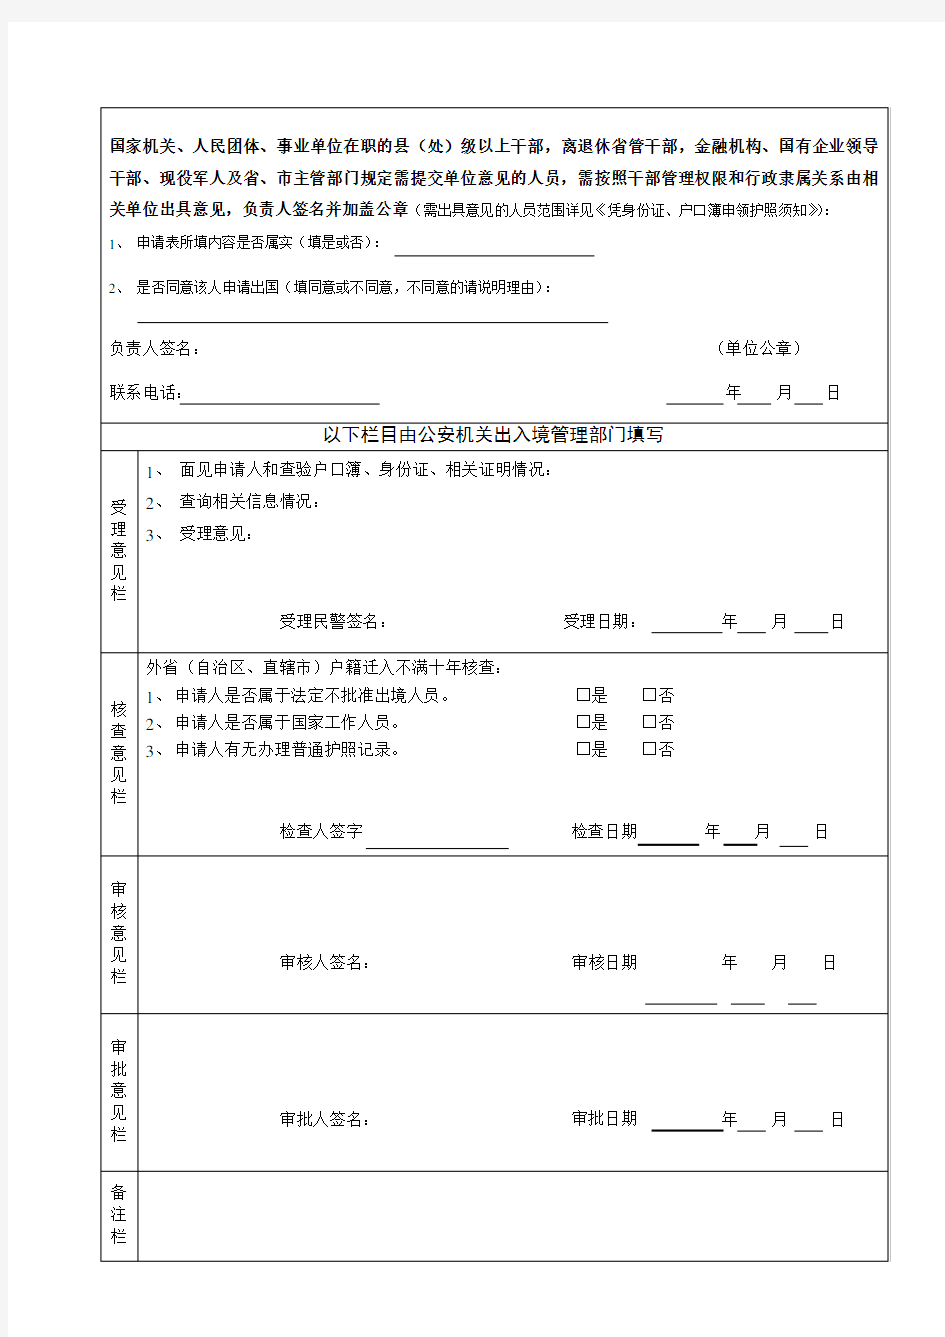 中国公民因私出国(境)申请表